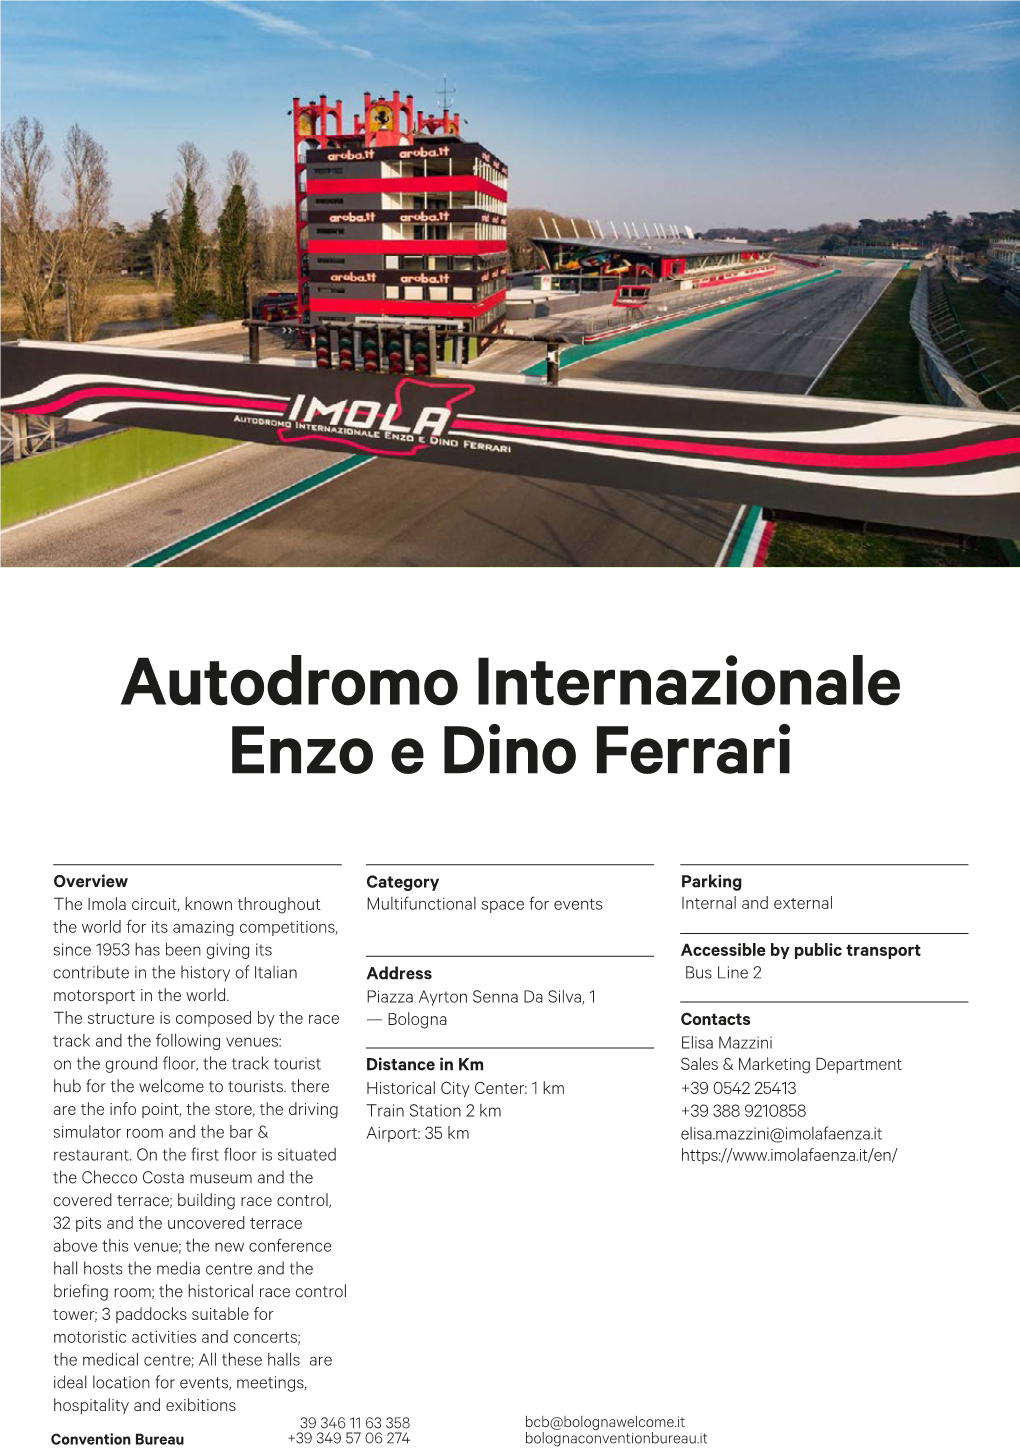 Autodromo Internazionale Enzo E Dino Ferrari